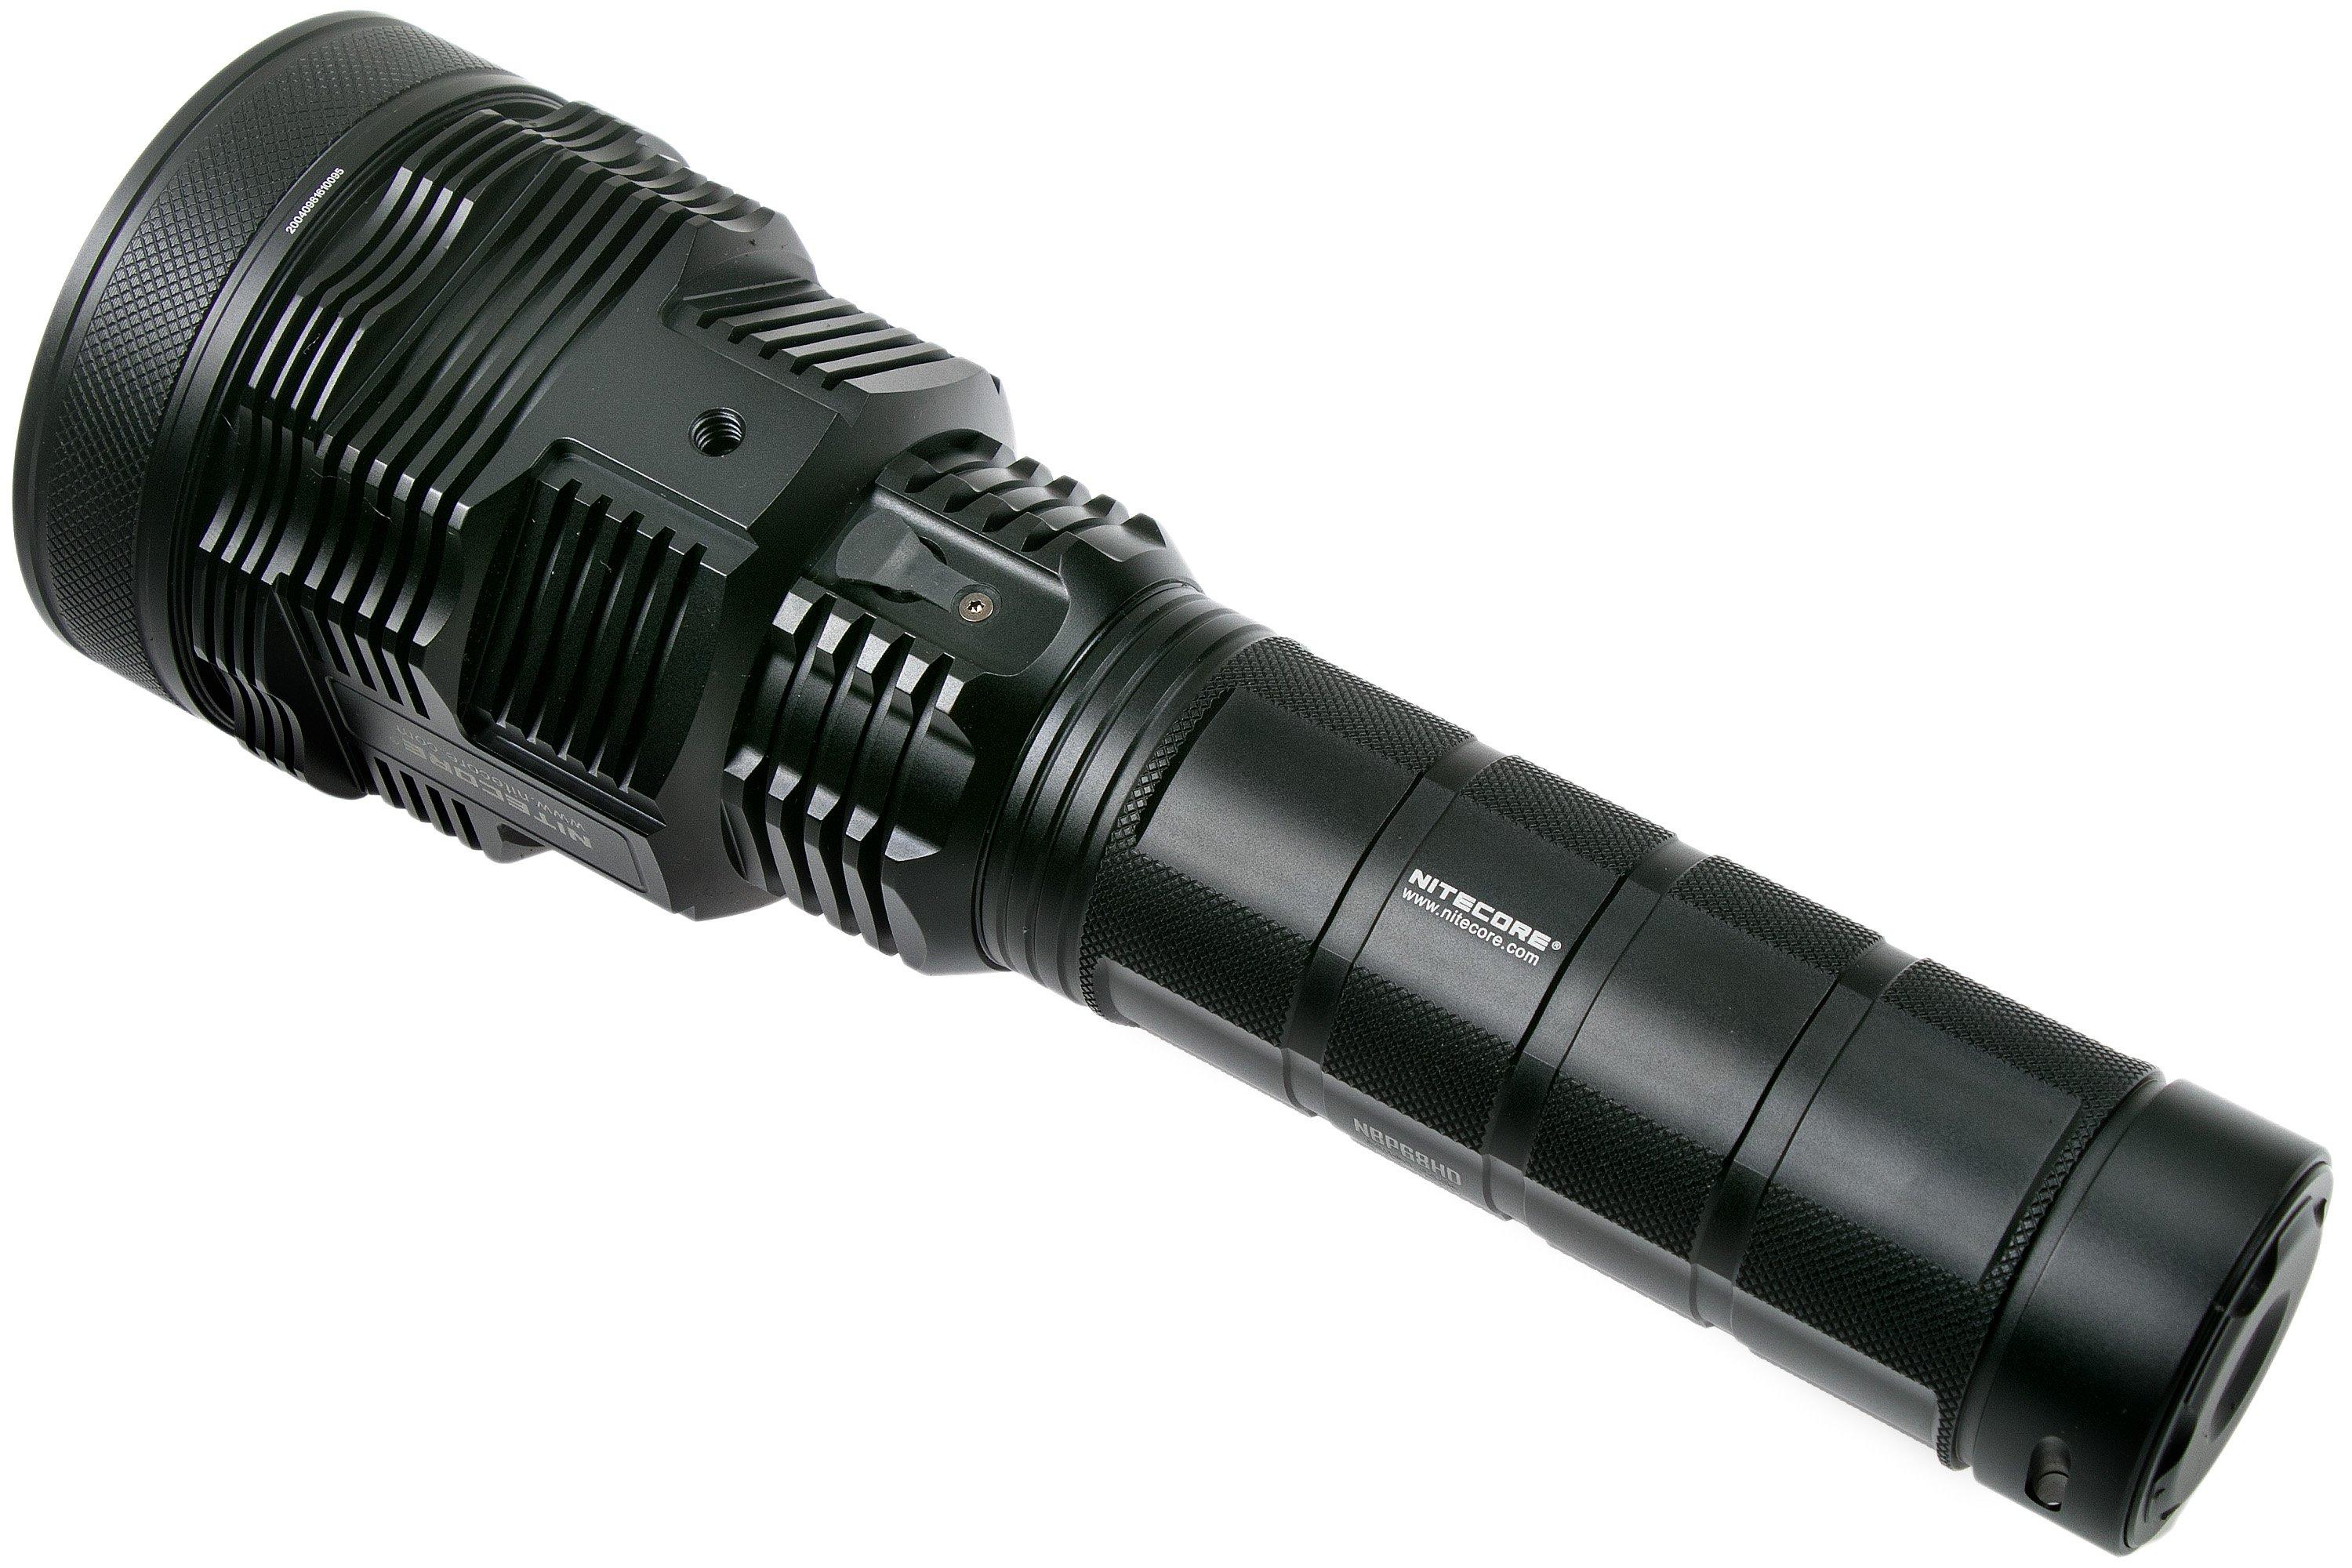 Fenix HT30R - lampe torche laser - 1500m de portée